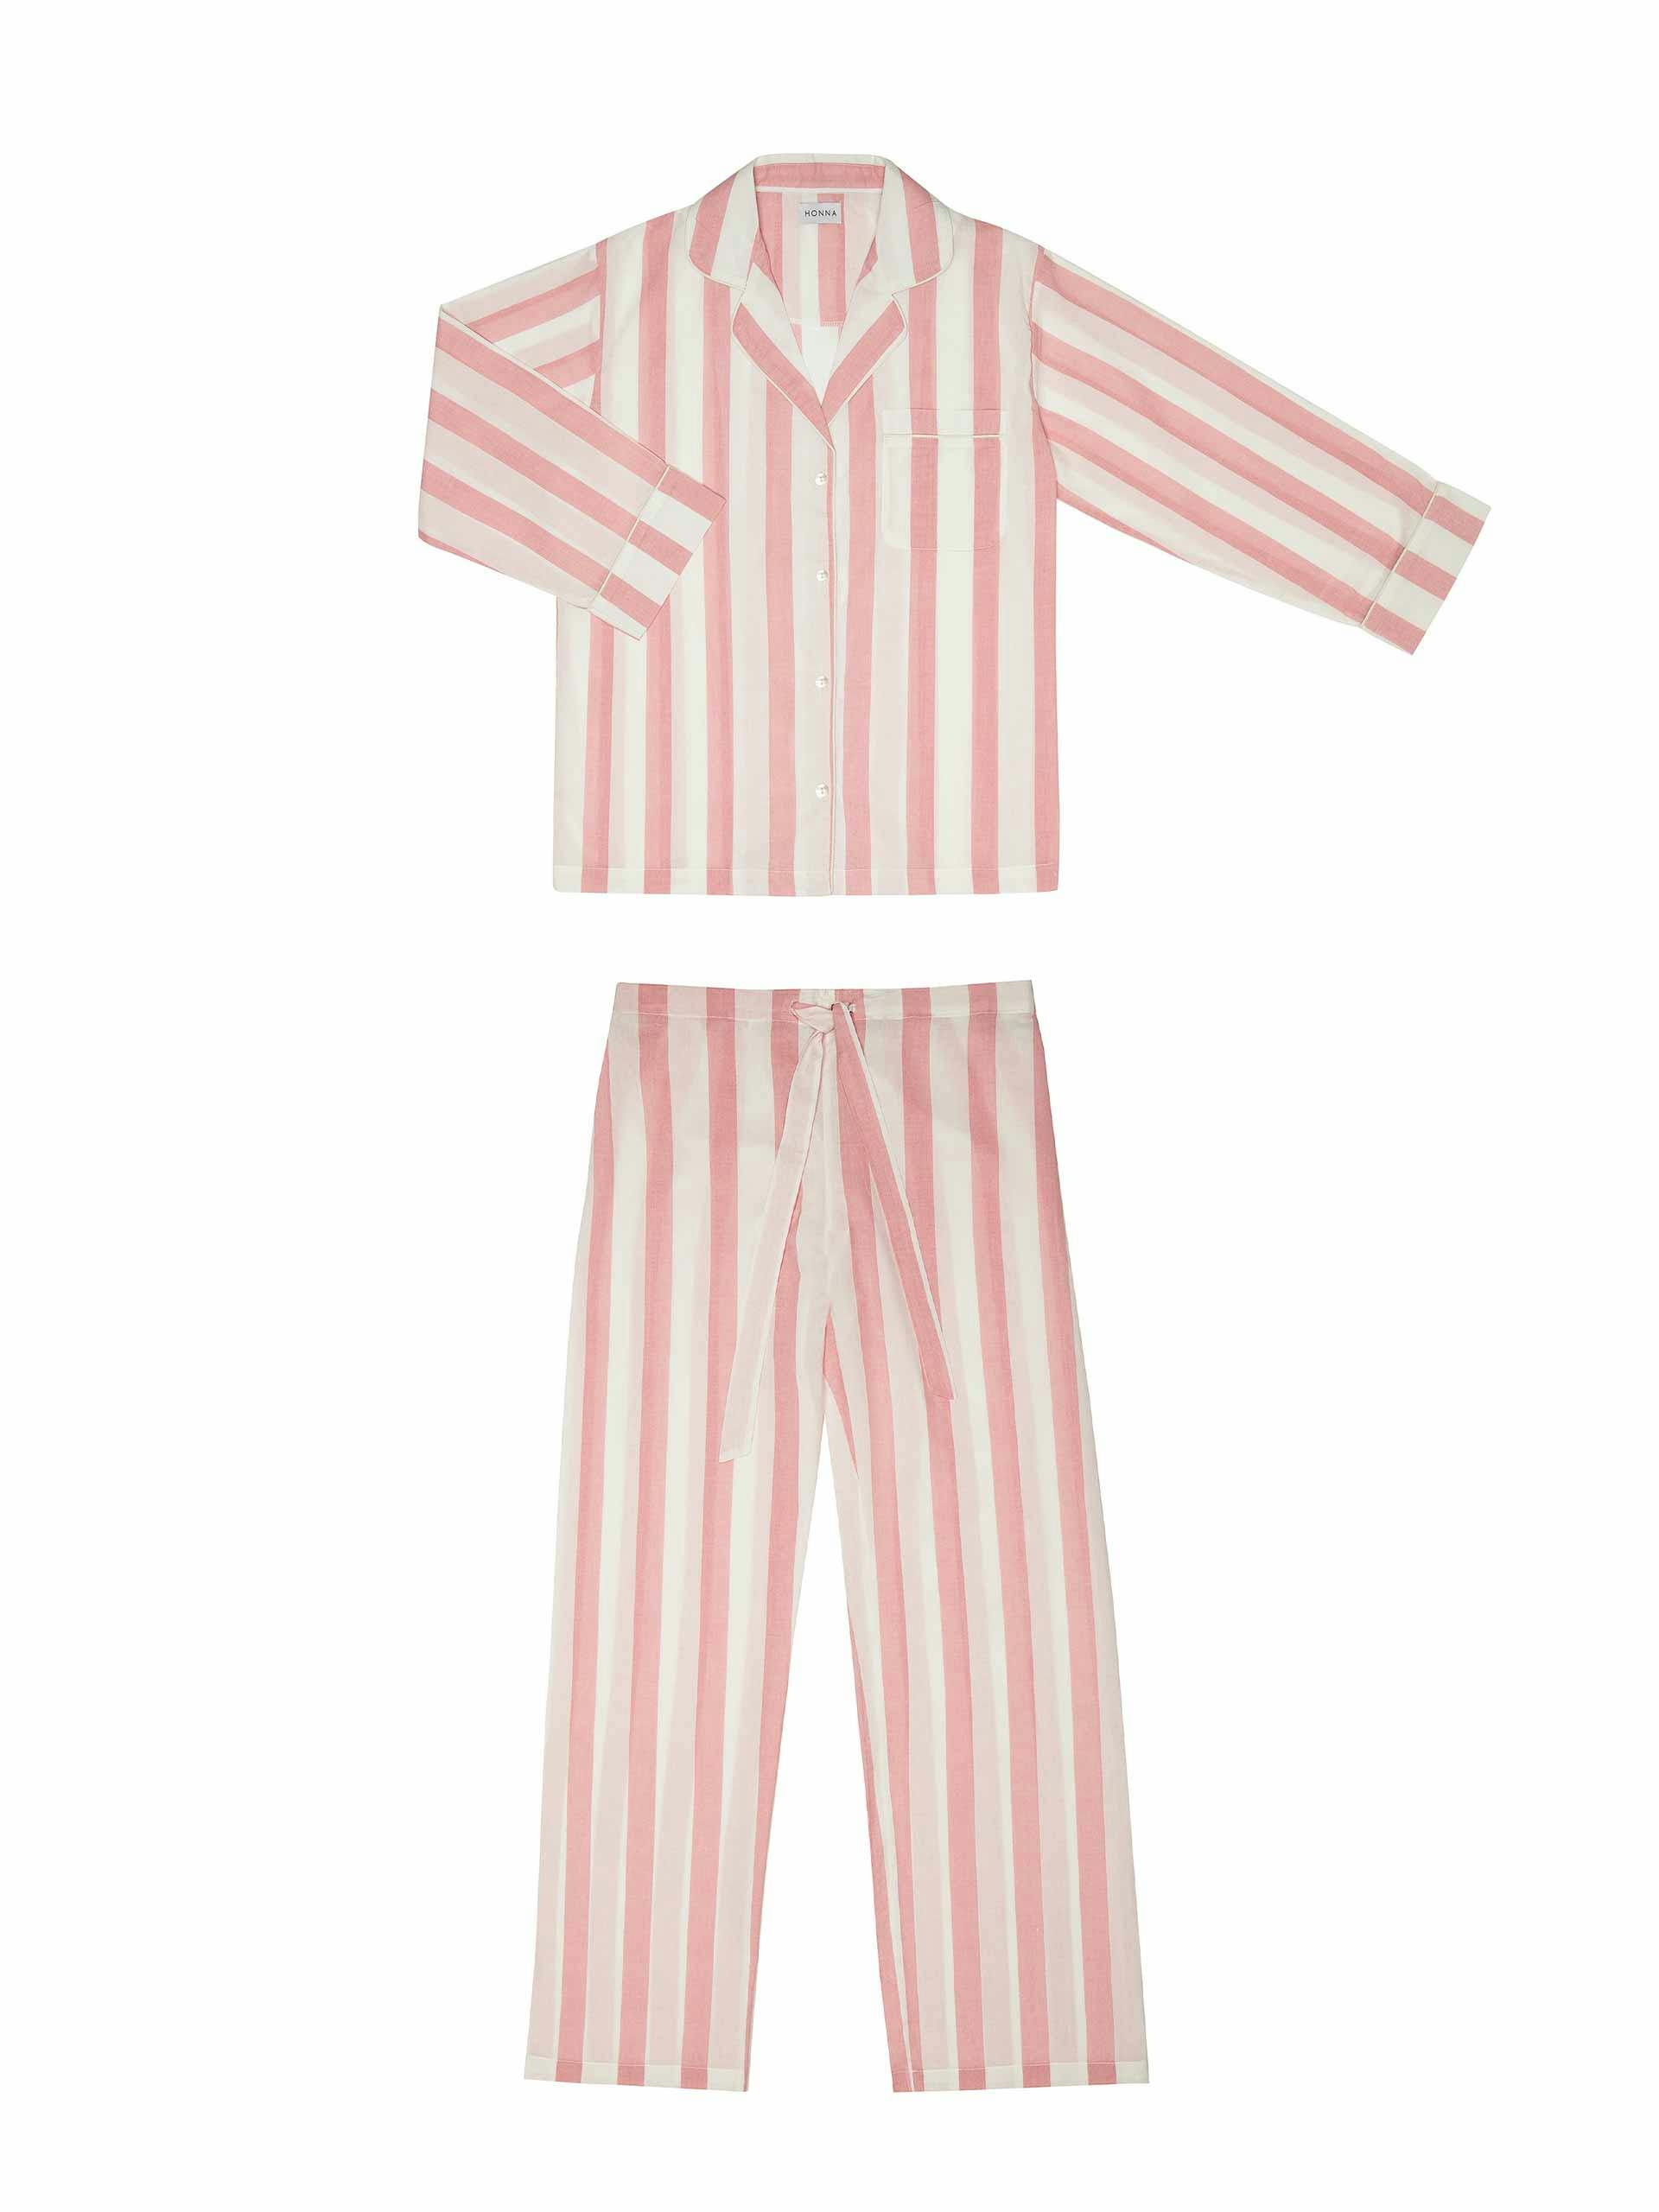 Pink striped pyjama set